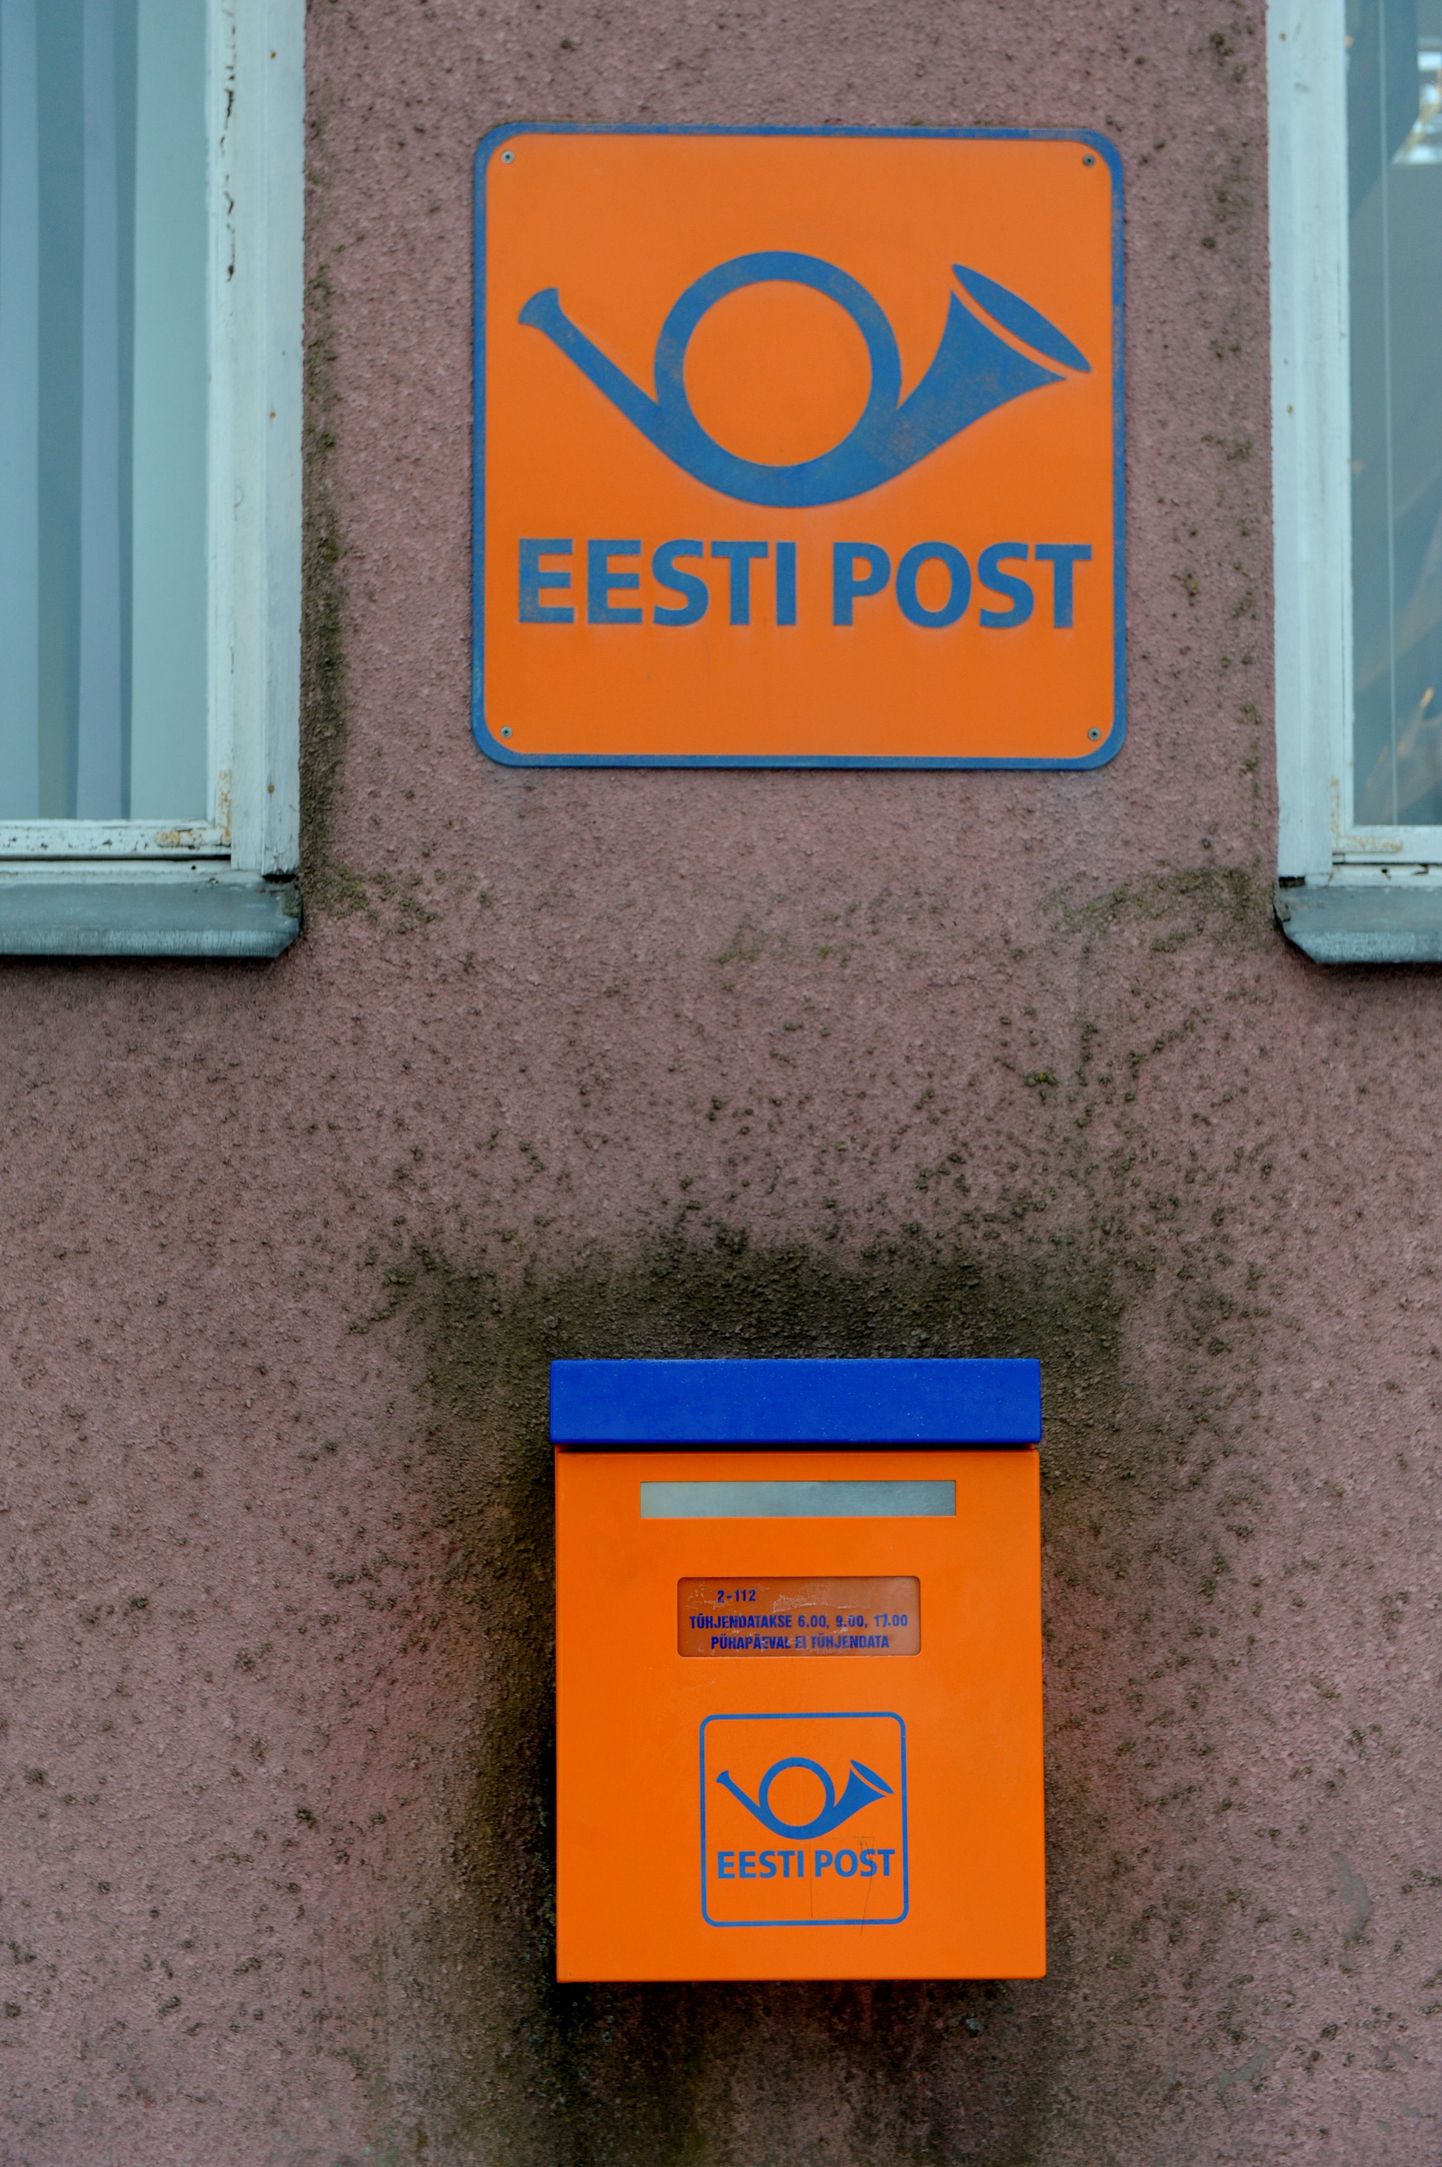 Puka postkontor muudab märtsi alguses veidi vormilt ja sisult, raamatukokku kolides saab kontorist punkt. Esmased vajadused teenuse järele saab siiski rahuldatud. Pilt on illustreeriv.